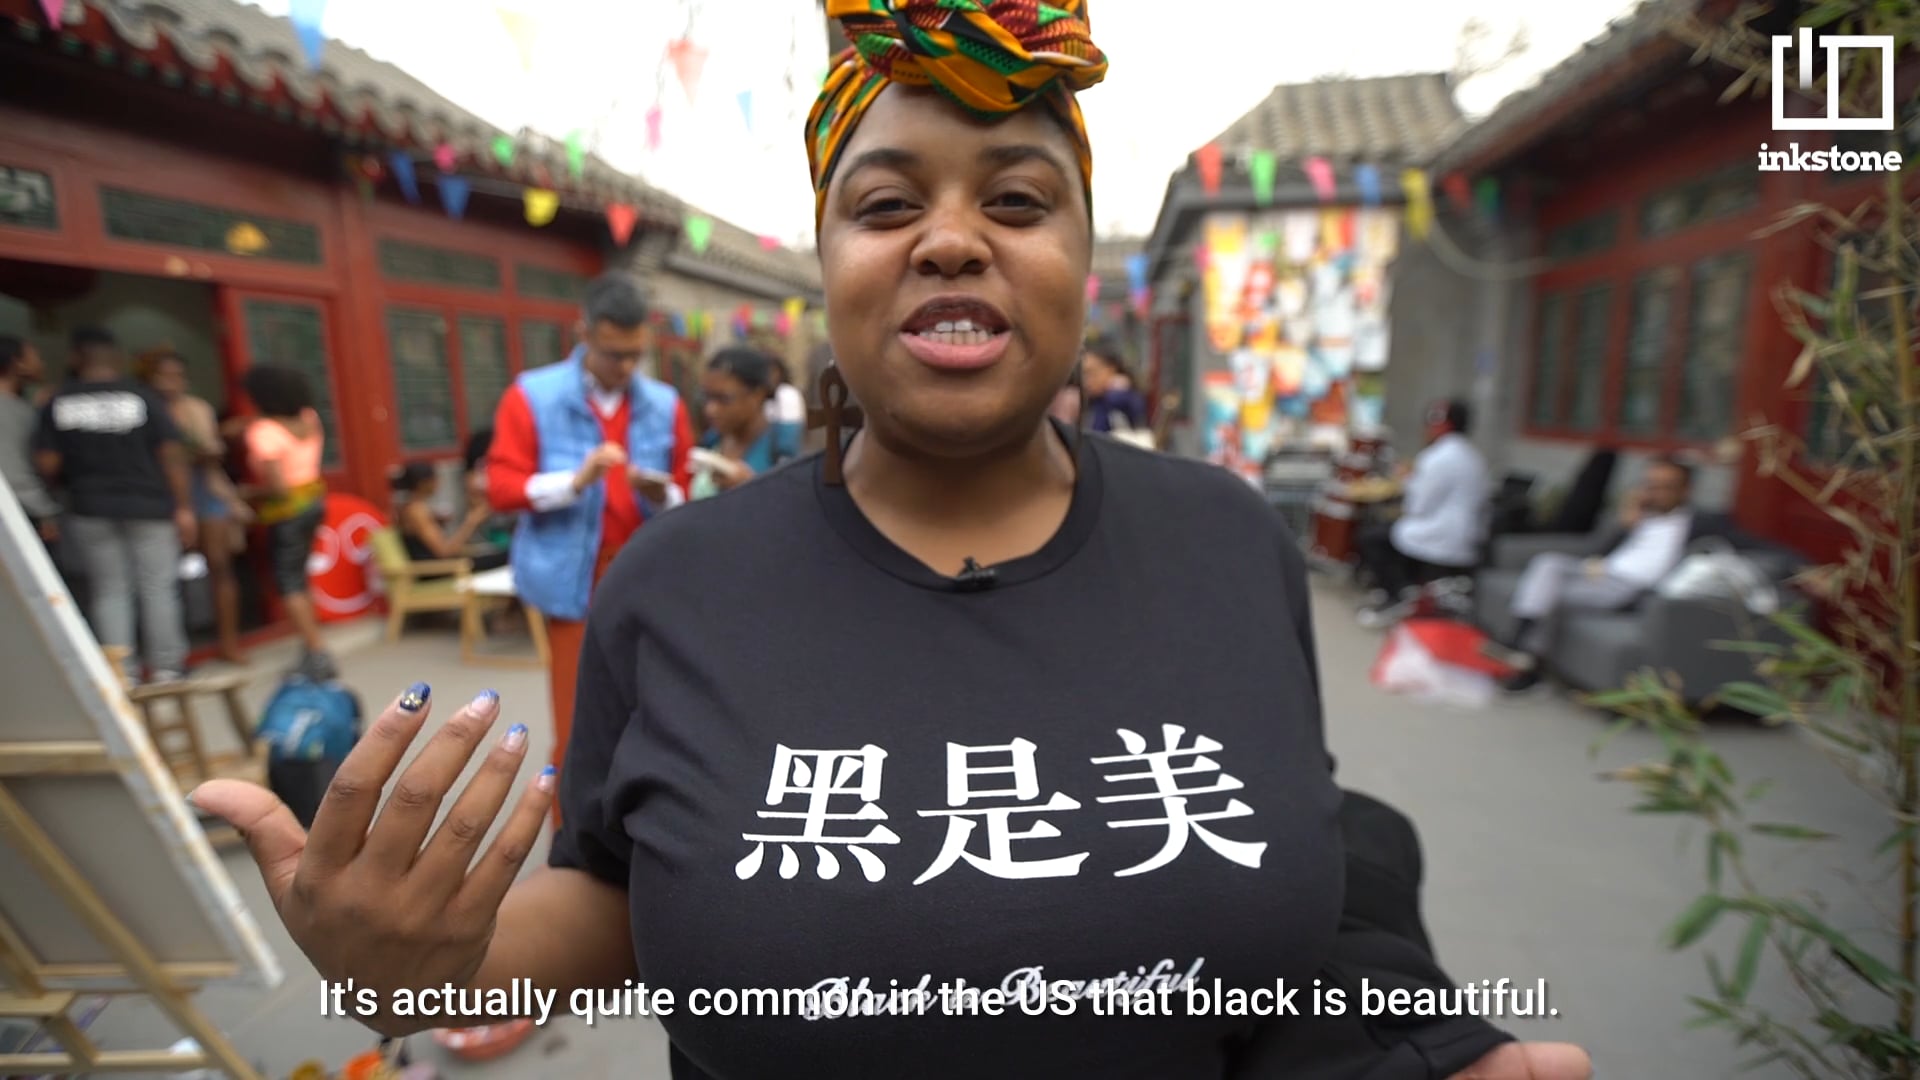 INKSTONE: Black is beautiful in China